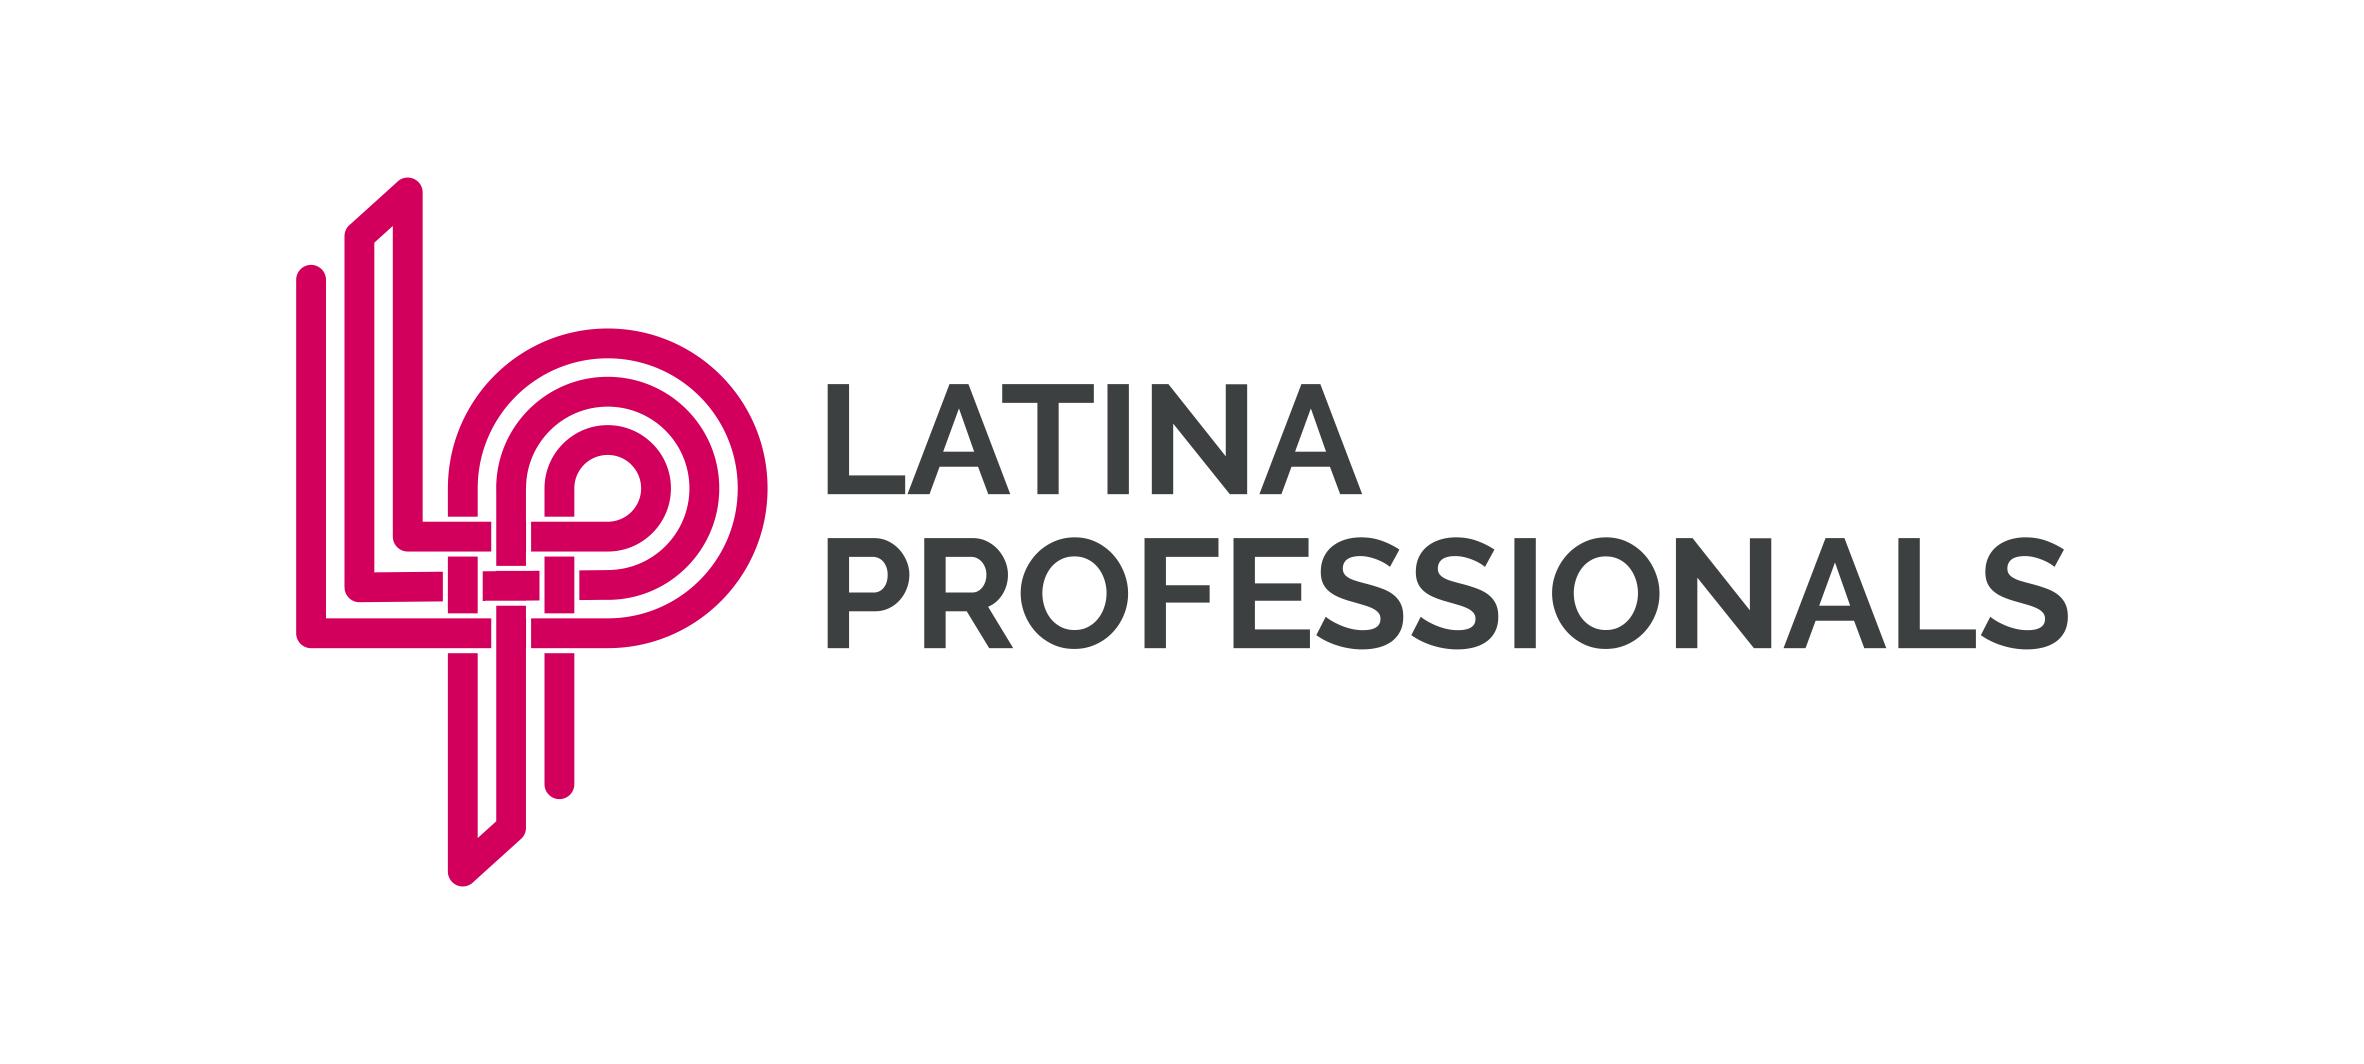 LatinaProfessionals